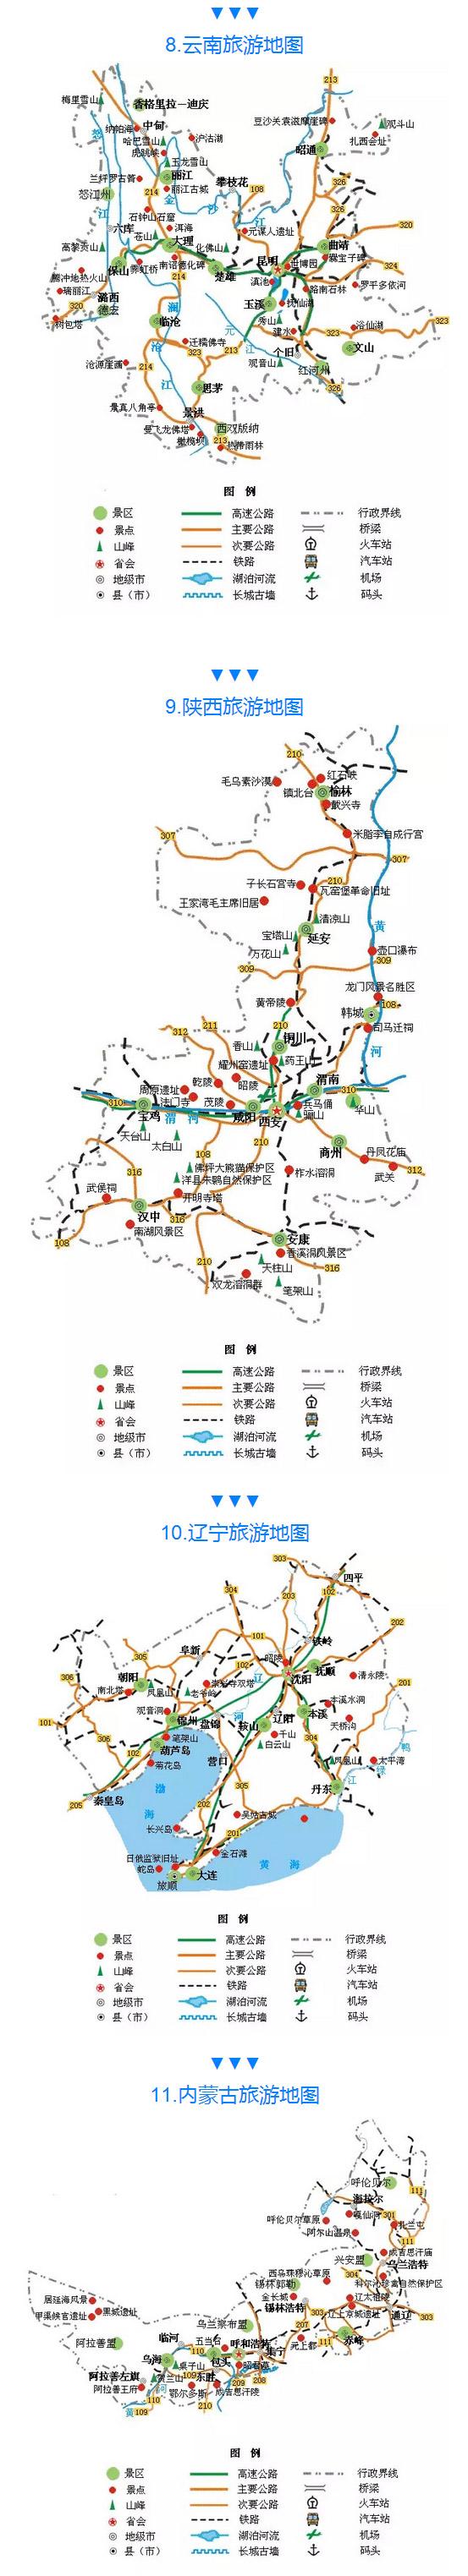 全国旅游路线图(中国最全旅游路线图 各大景点一目了然)